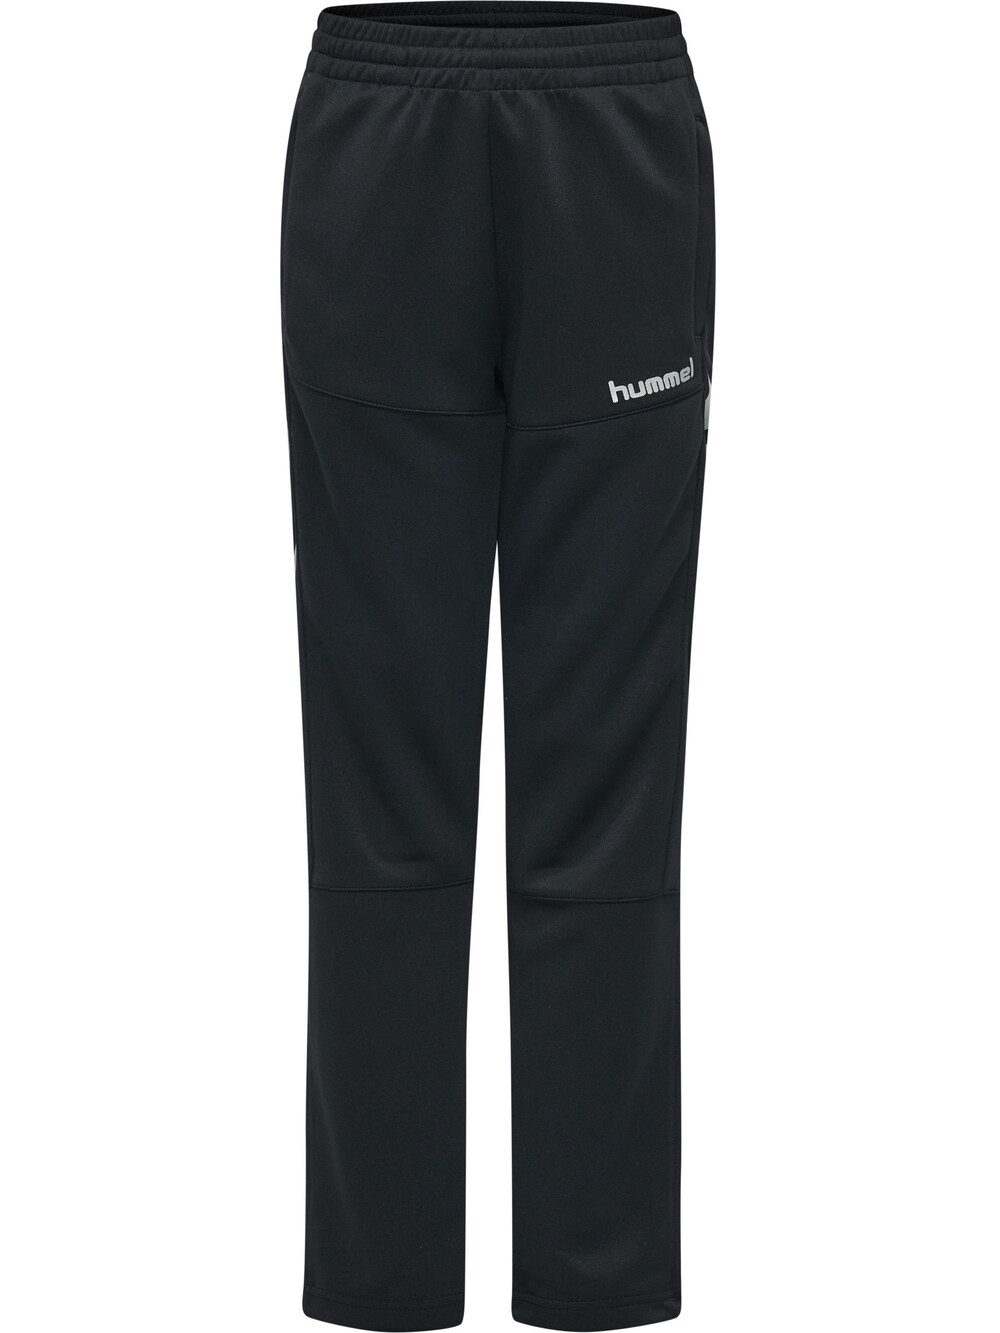 Обычные тренировочные брюки Hummel, черный обычные тренировочные брюки hummel черный